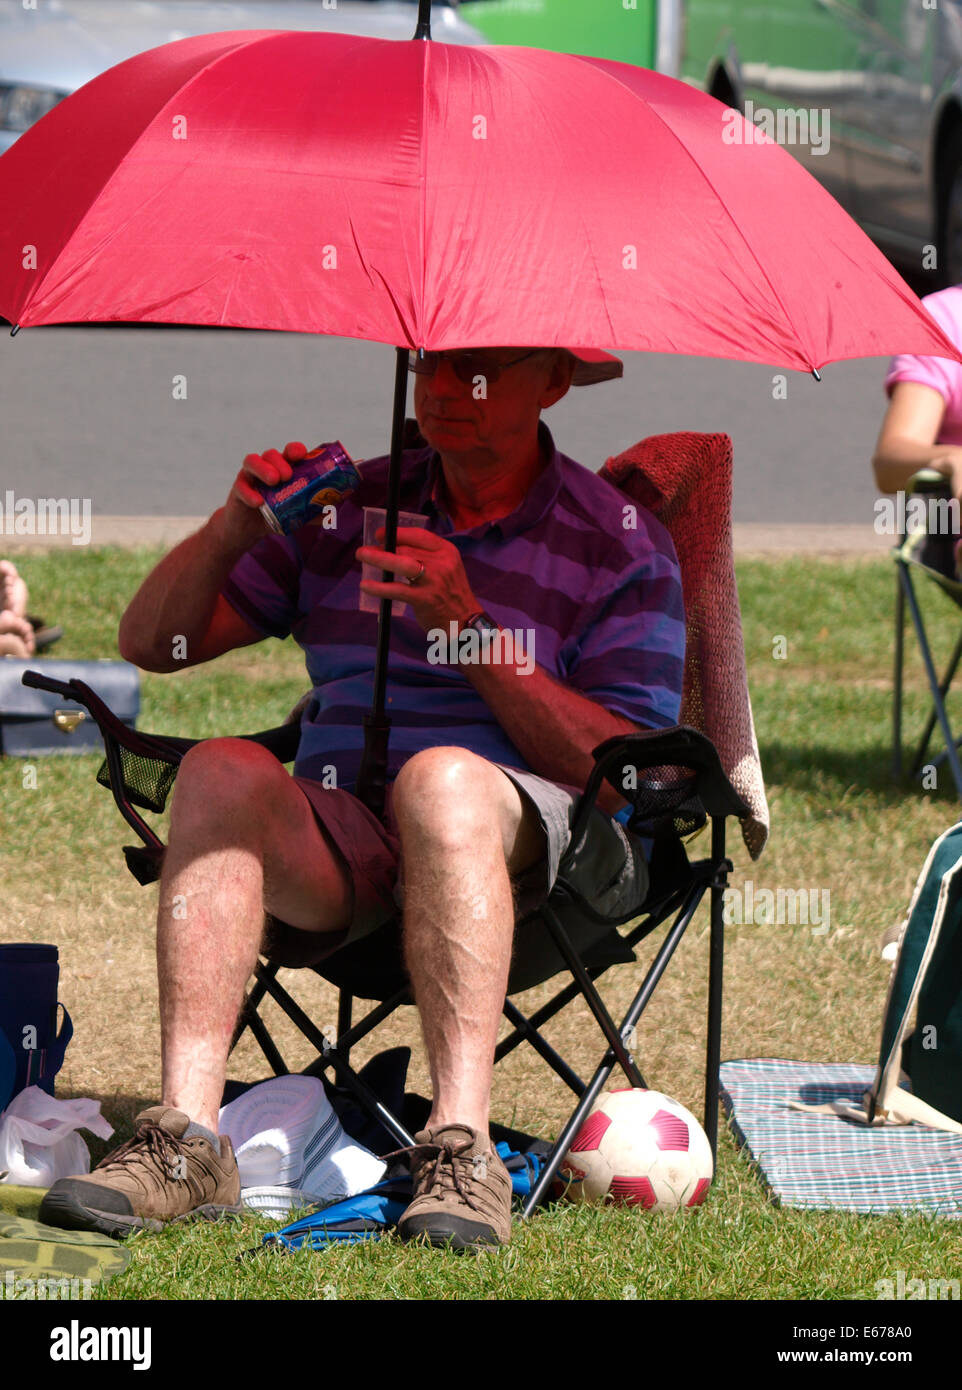 Titolare di pensione o di rendita godendo il sole estivo si sedette sotto un ombrello, REGNO UNITO Foto Stock